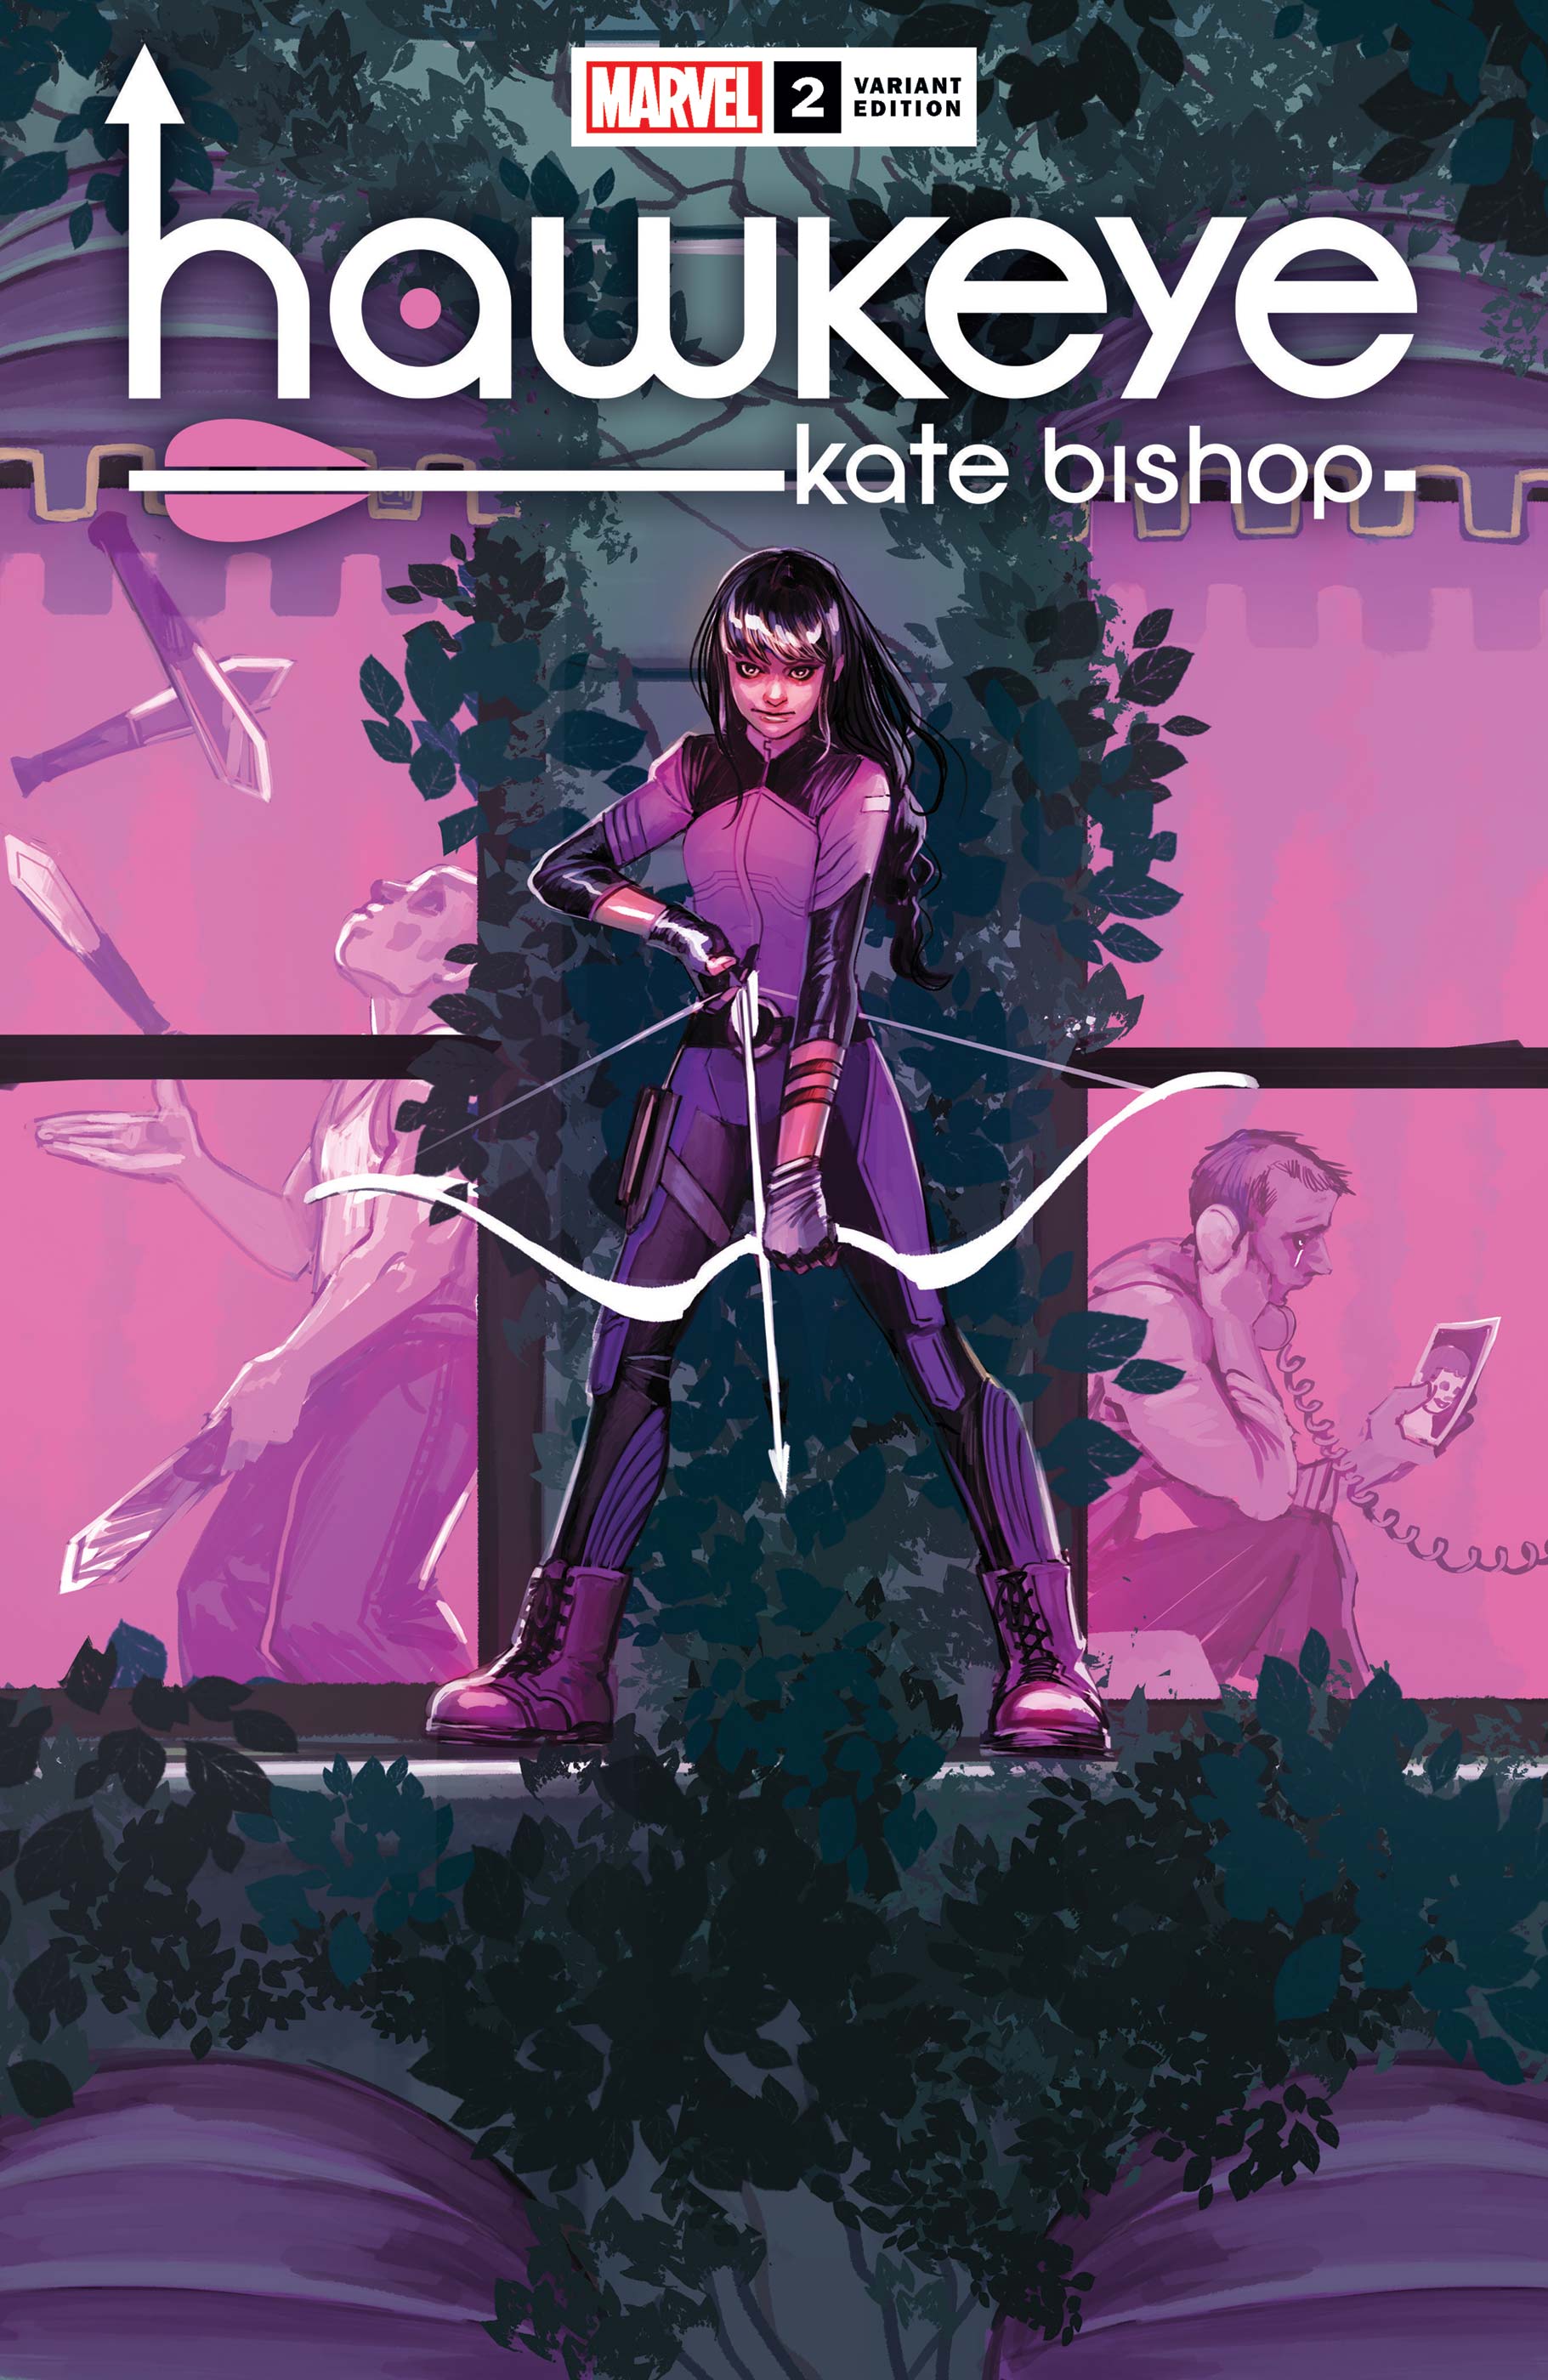 Hawkeye: Kate Bishop (2021) #2 (Variant)